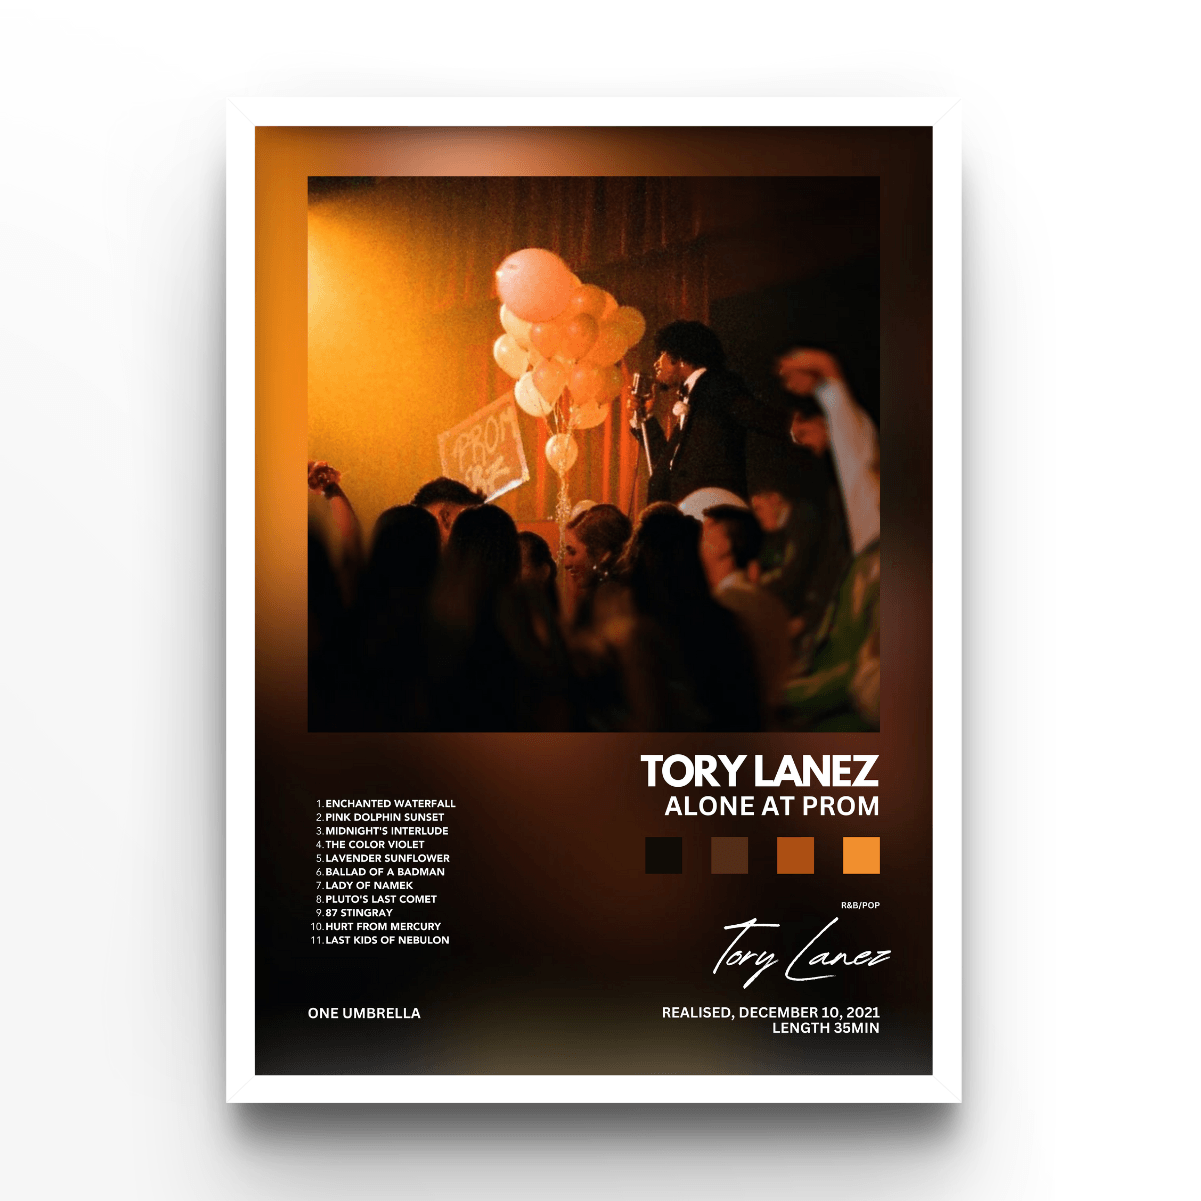 Tory Lanez - A4, A3, A2 Posters Base - Poster Print Shop / Art Prints / PostersBase